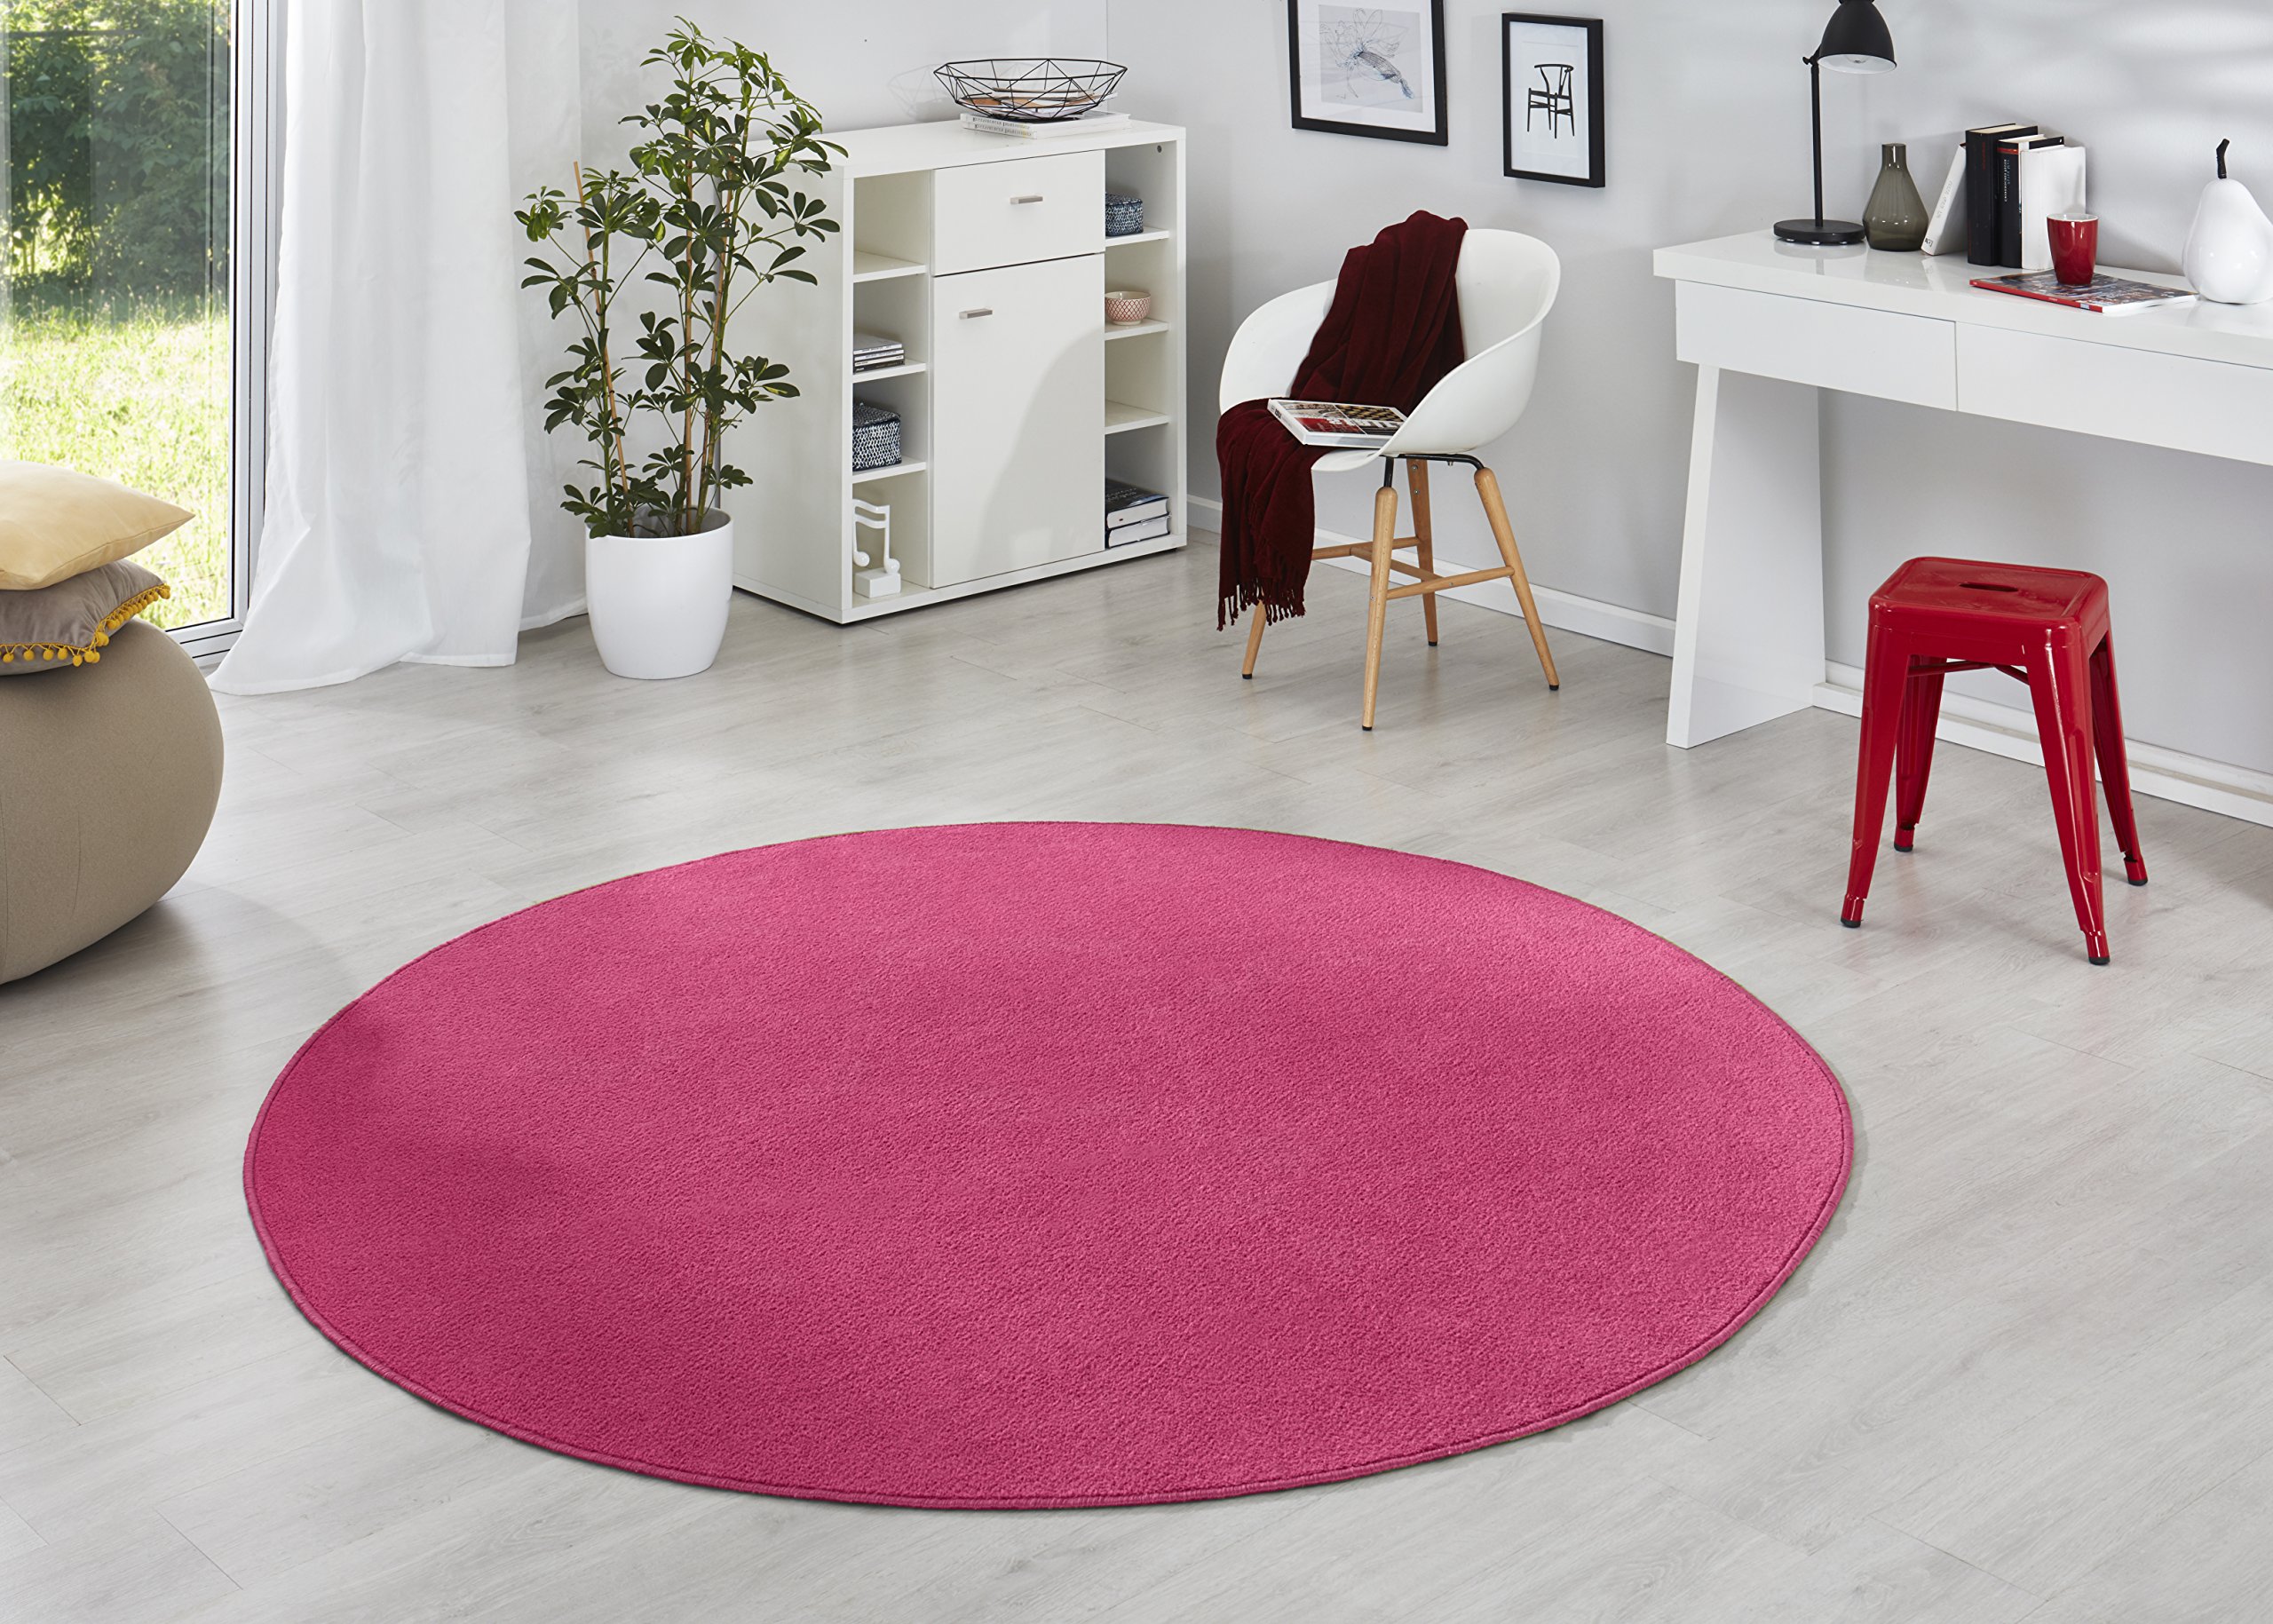 Hanse Home Teppich Fancy Rund – Wohnzimmerteppich einfarbig Modern Velours Teppich für Esszimmer, Wohnzimmer, Kinderzimmer, Flur, Schlafzimmer, Küche – Pink, Ø133cm